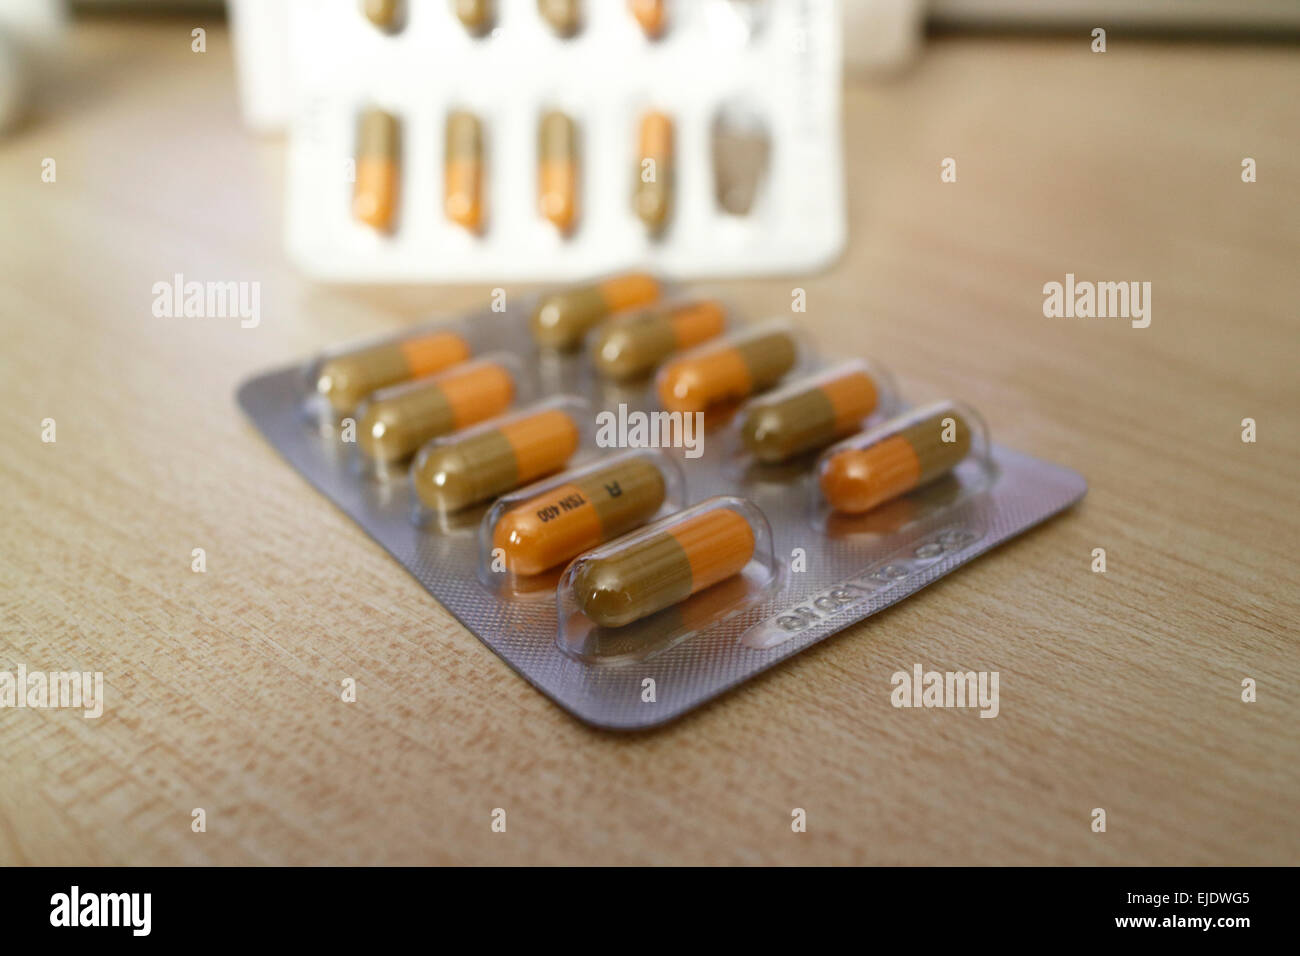 Contiflo xl Tamsulosin Hydrochlorid verschreibungspflichtige Medikamente  Tabletten in Blister-Packungen Stockfotografie - Alamy